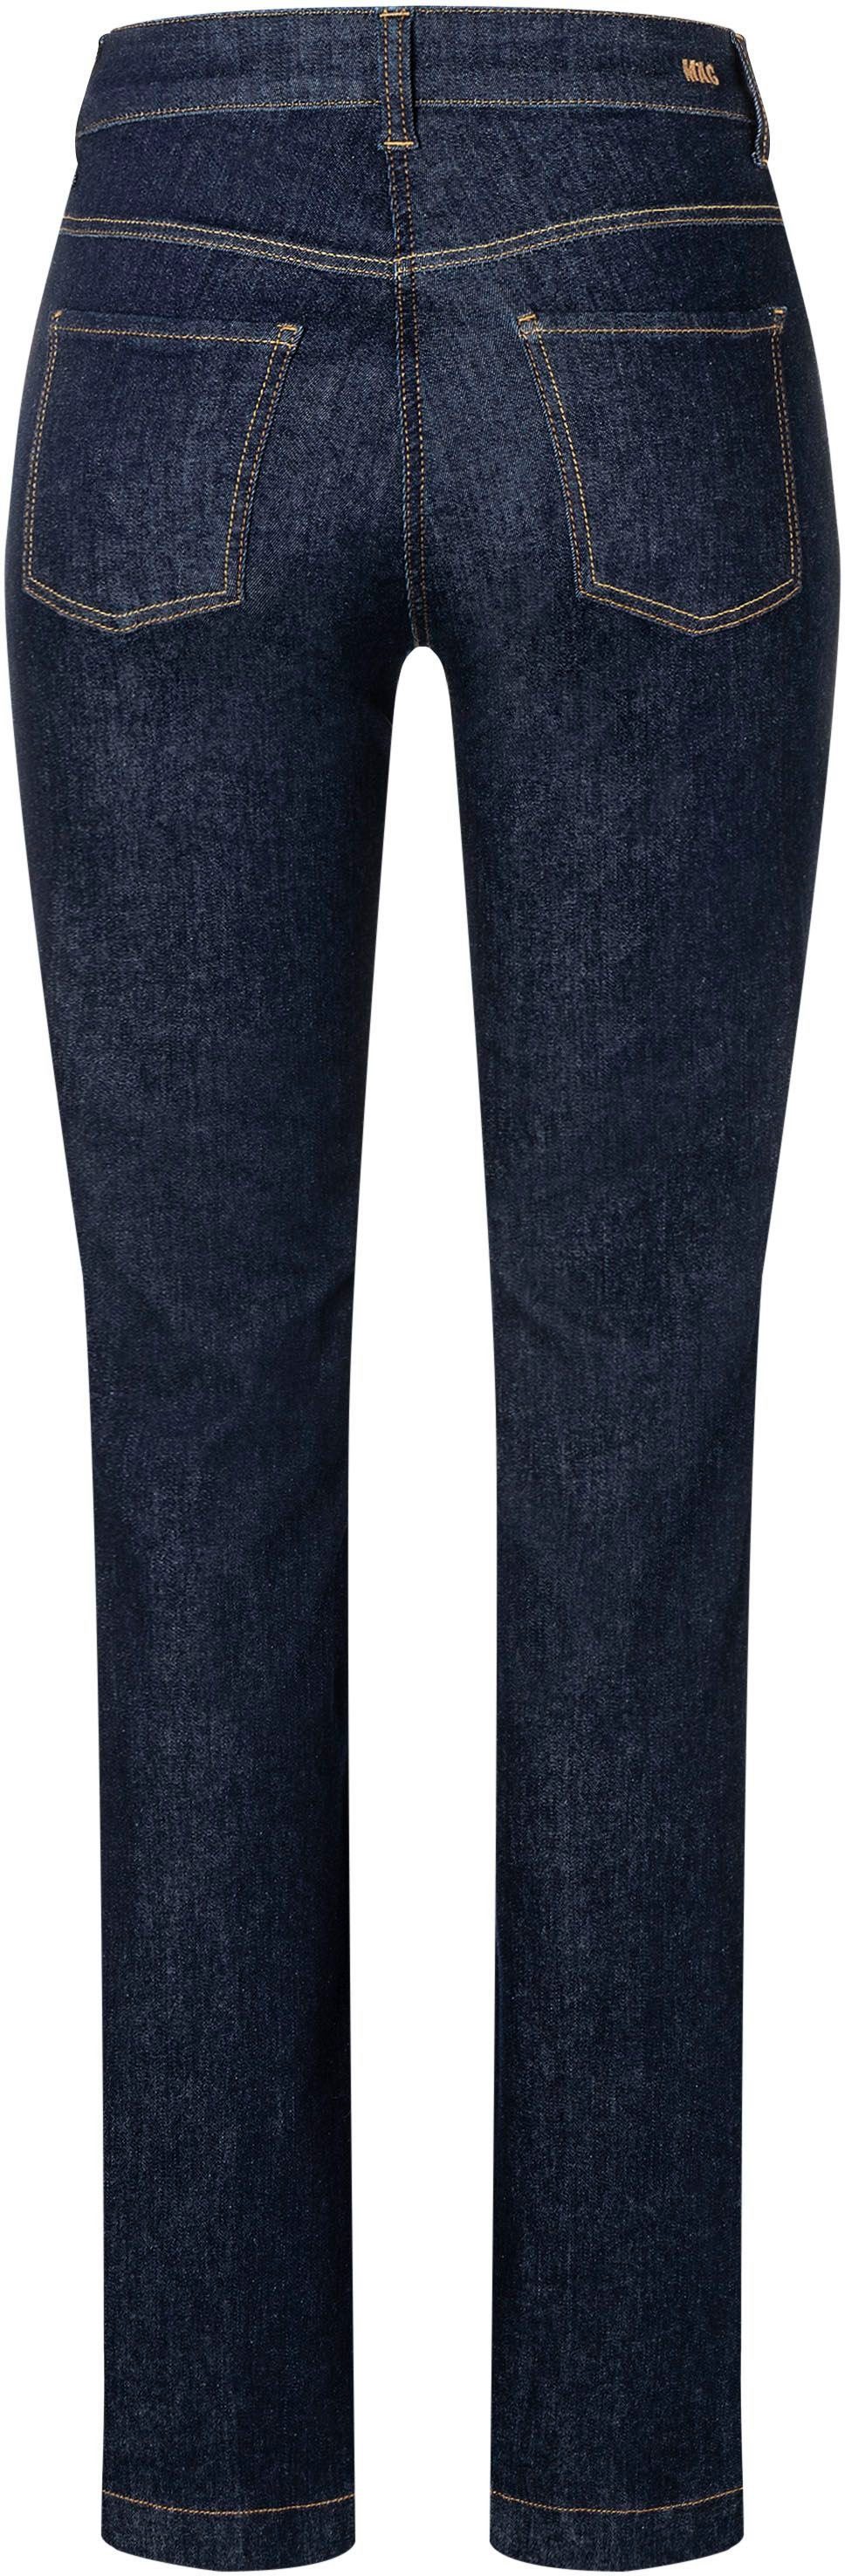 MAC High-waist jeans Boot